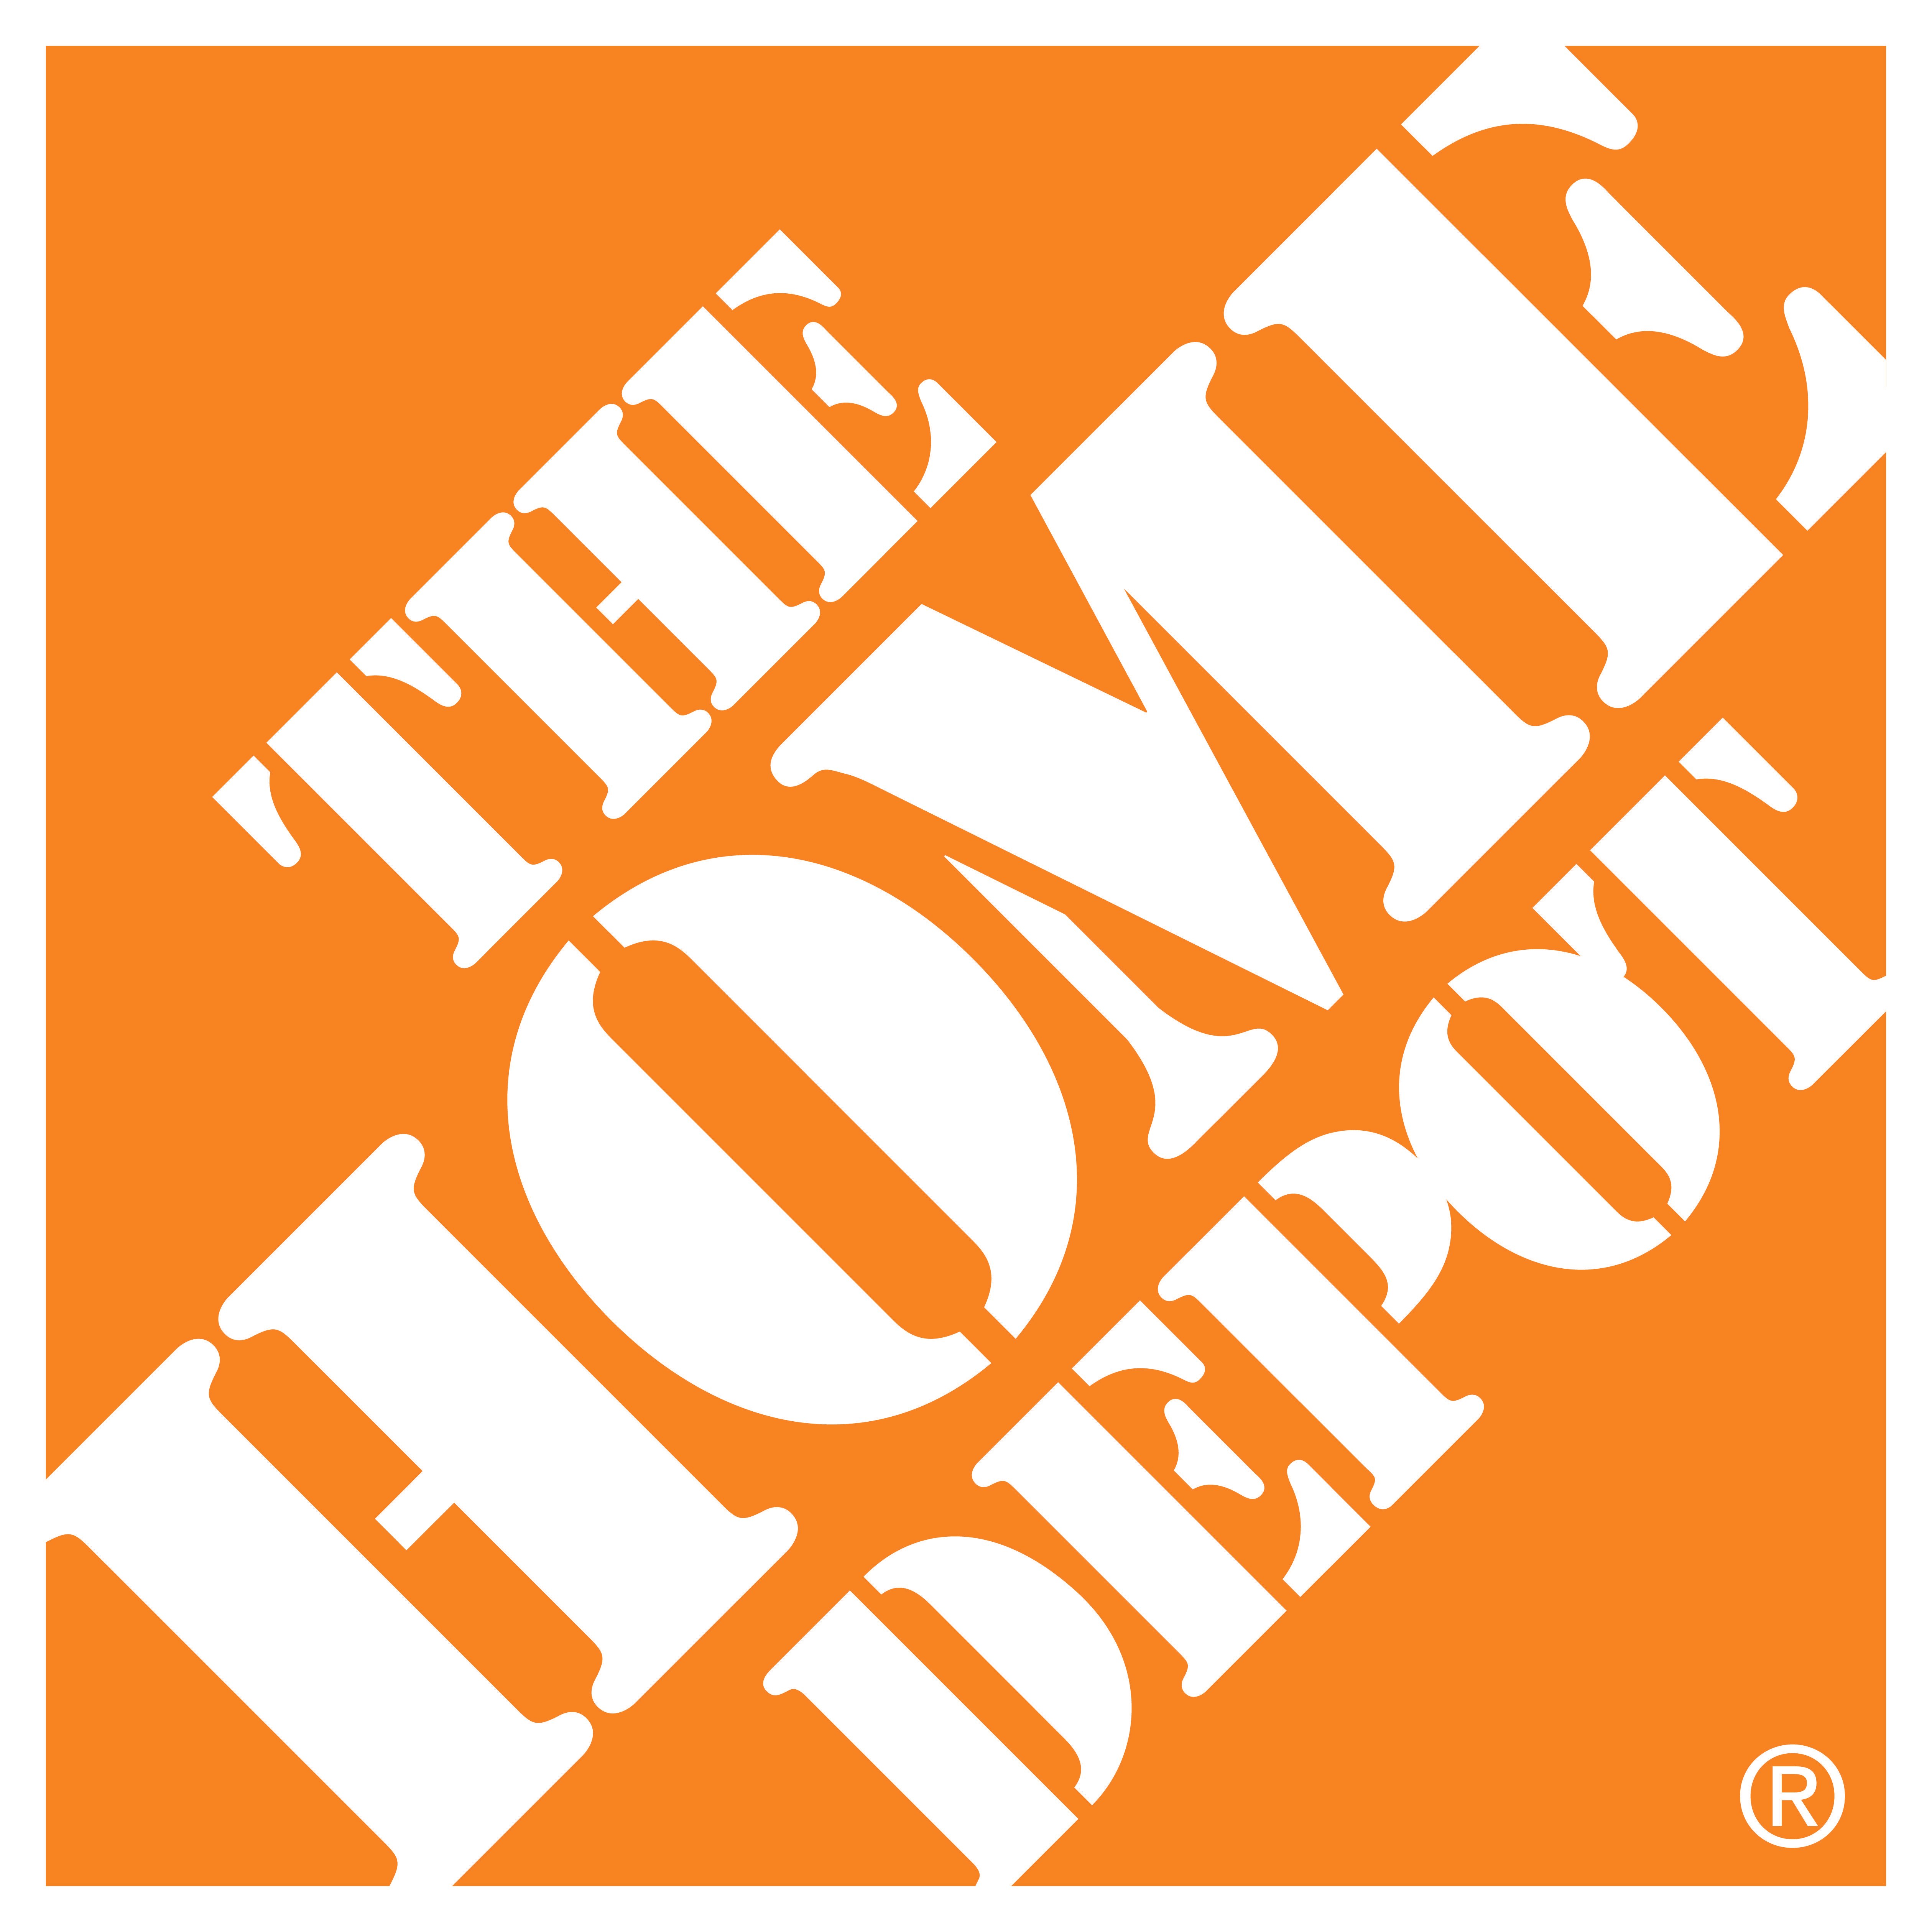 Home Depot Logo - The Home Depot | the-home-depot-logo.jpg